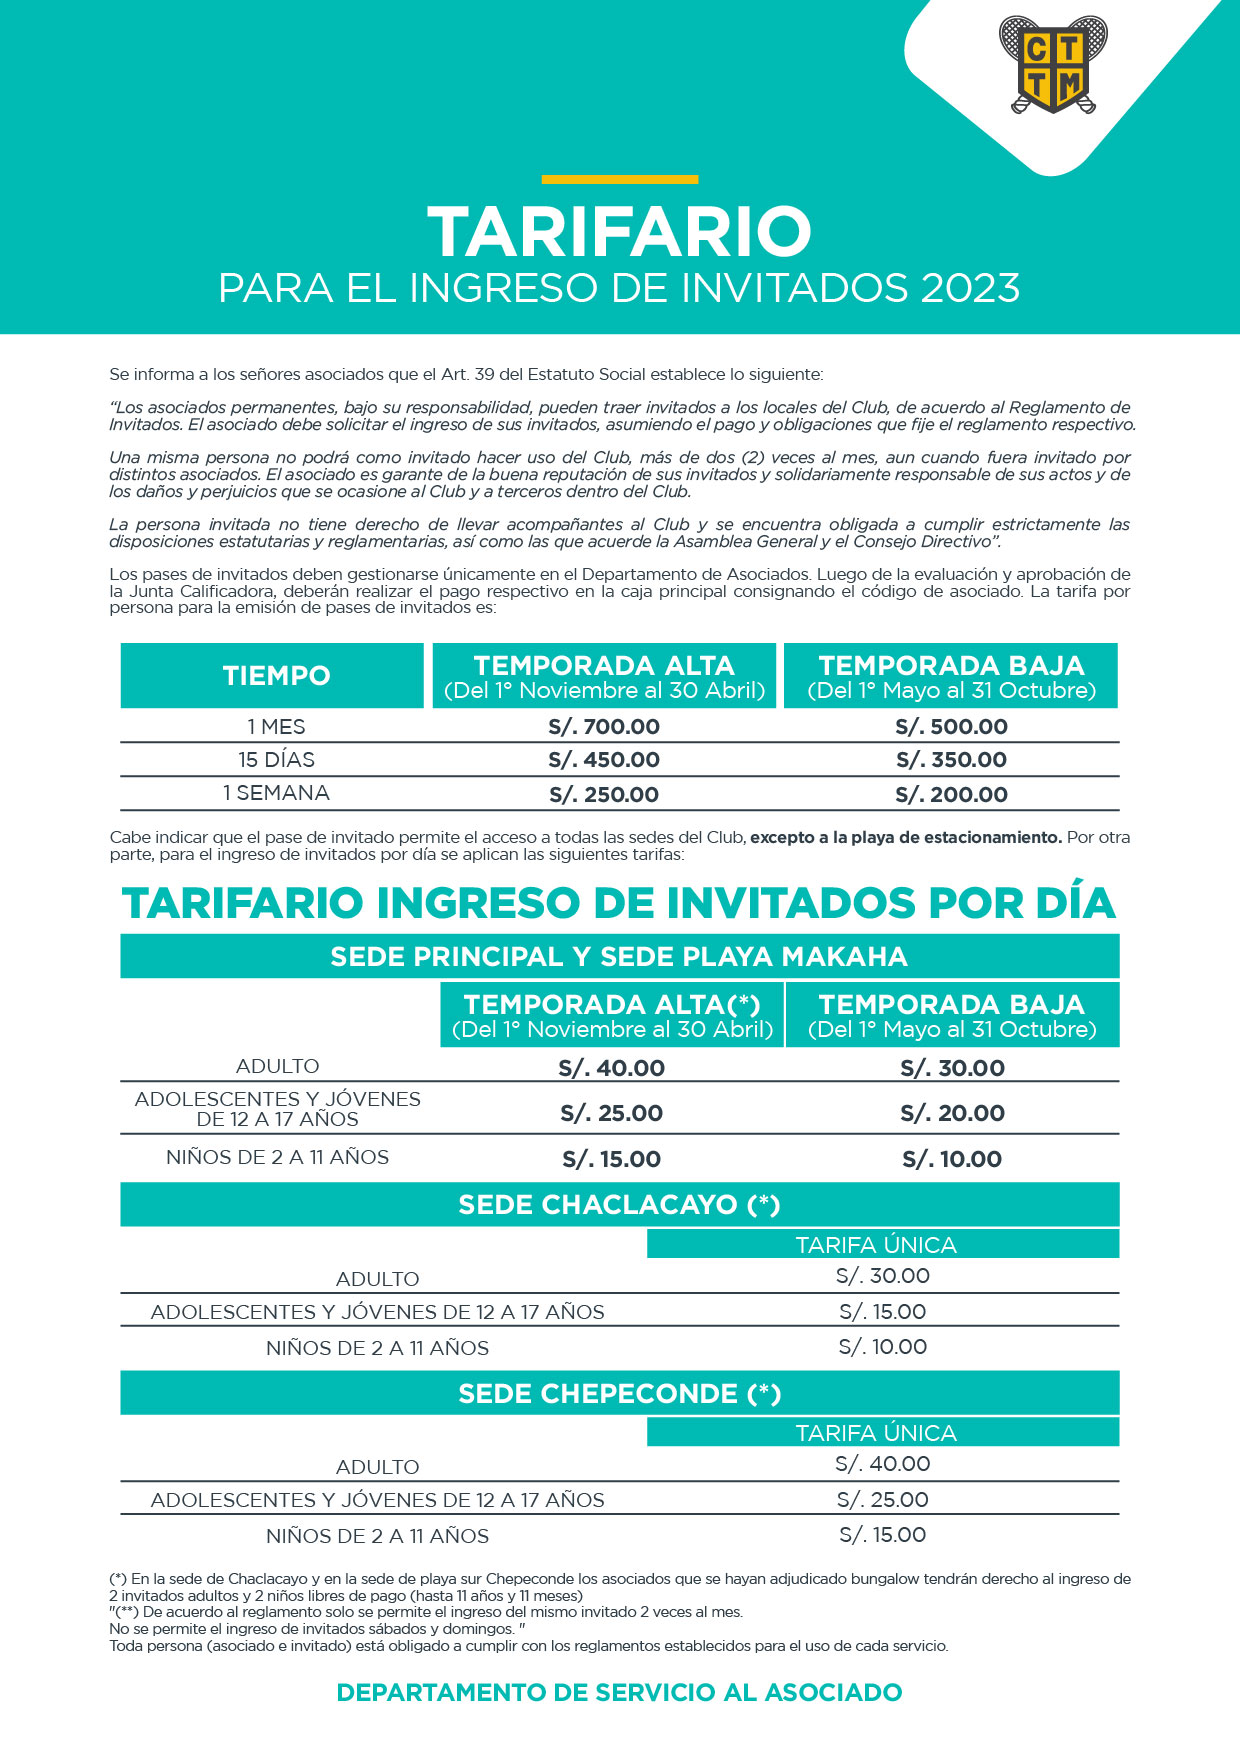 TARIFARIO INGRESO DE INVITADOS 2023